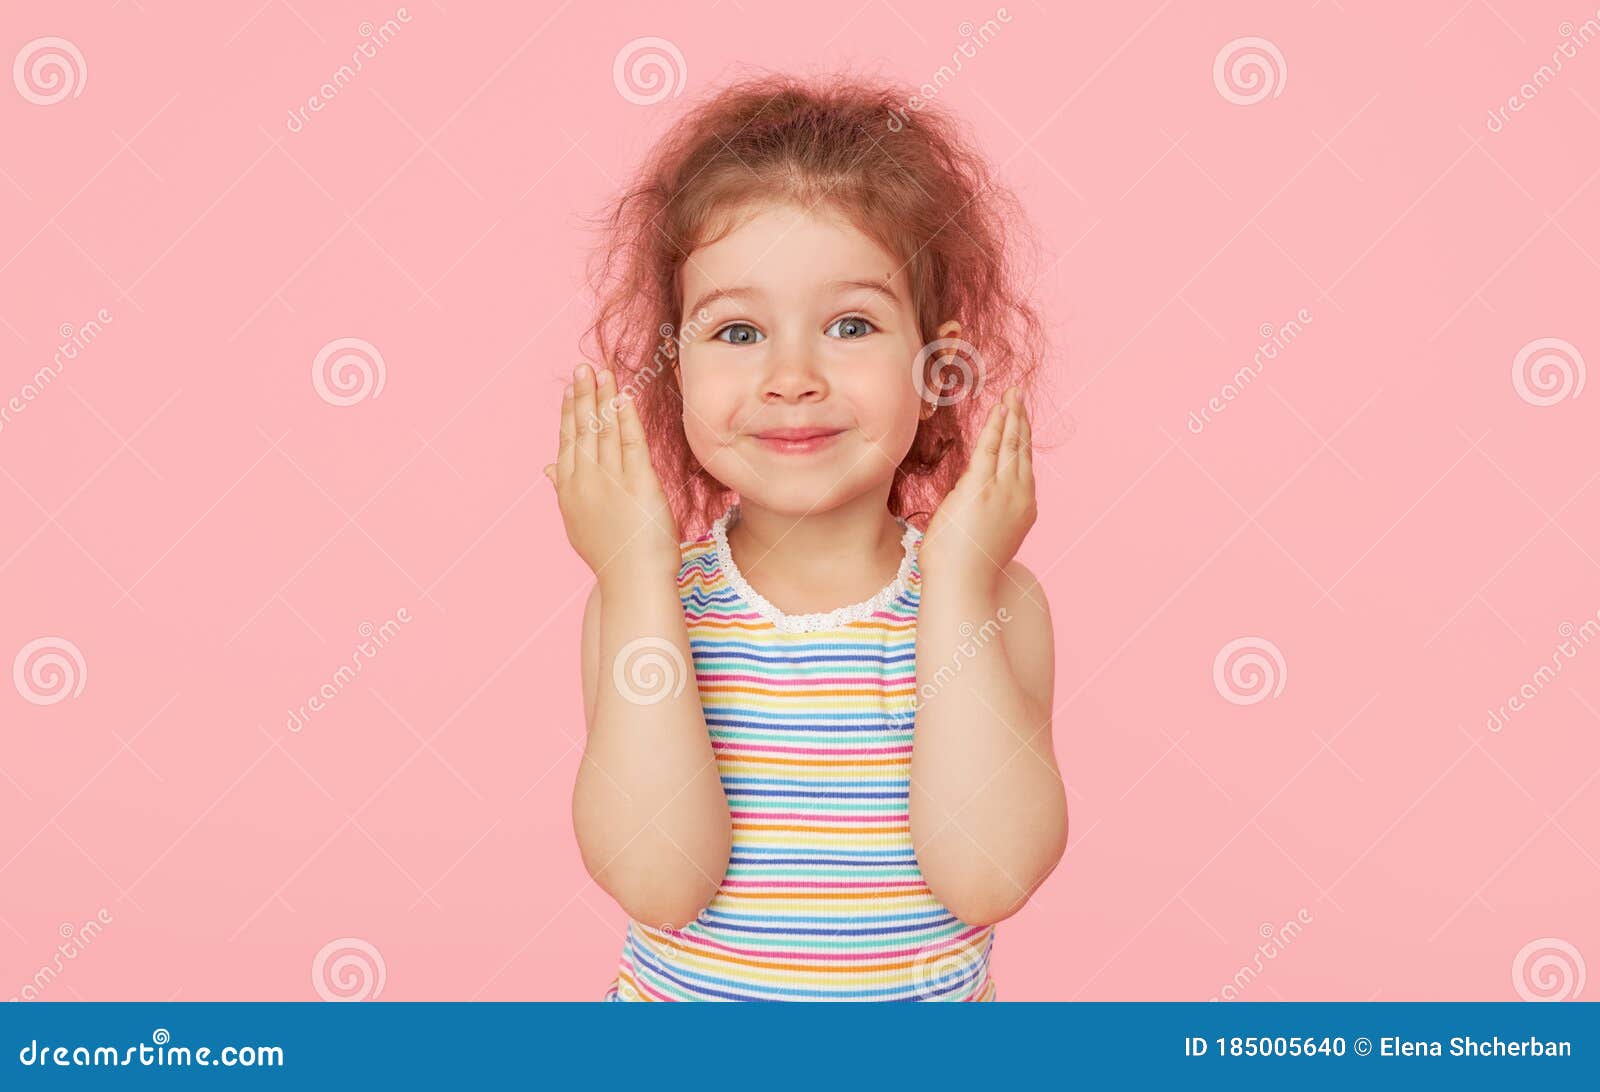 Linda adorable niña preescolar, de 3 a 4 años de edad, mira pensativamente  hacia arriba, sosteniendo su dedo en su sien, posando sobre un fondo rosa  con espacio de copia. retrato de